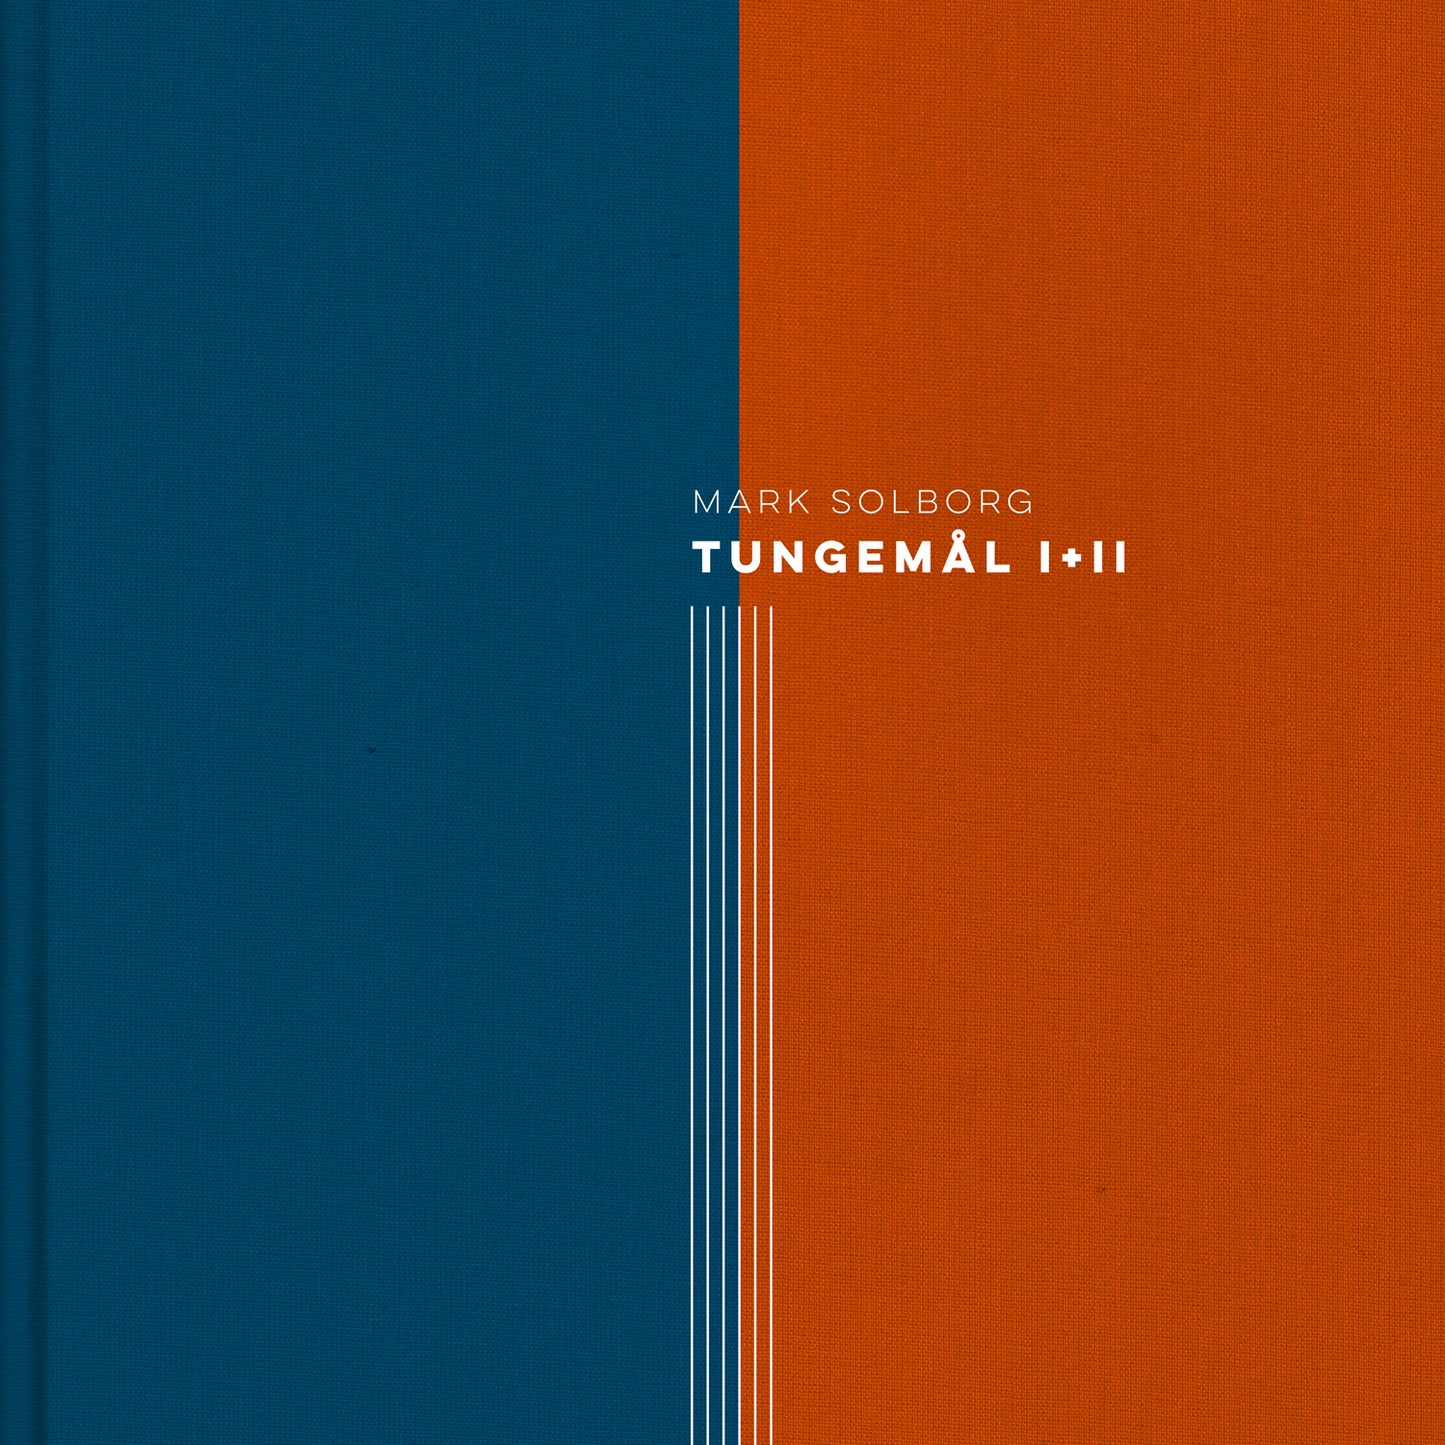 Mark Solborg: TUNGEMÅL I+II (Special Digital Edition)